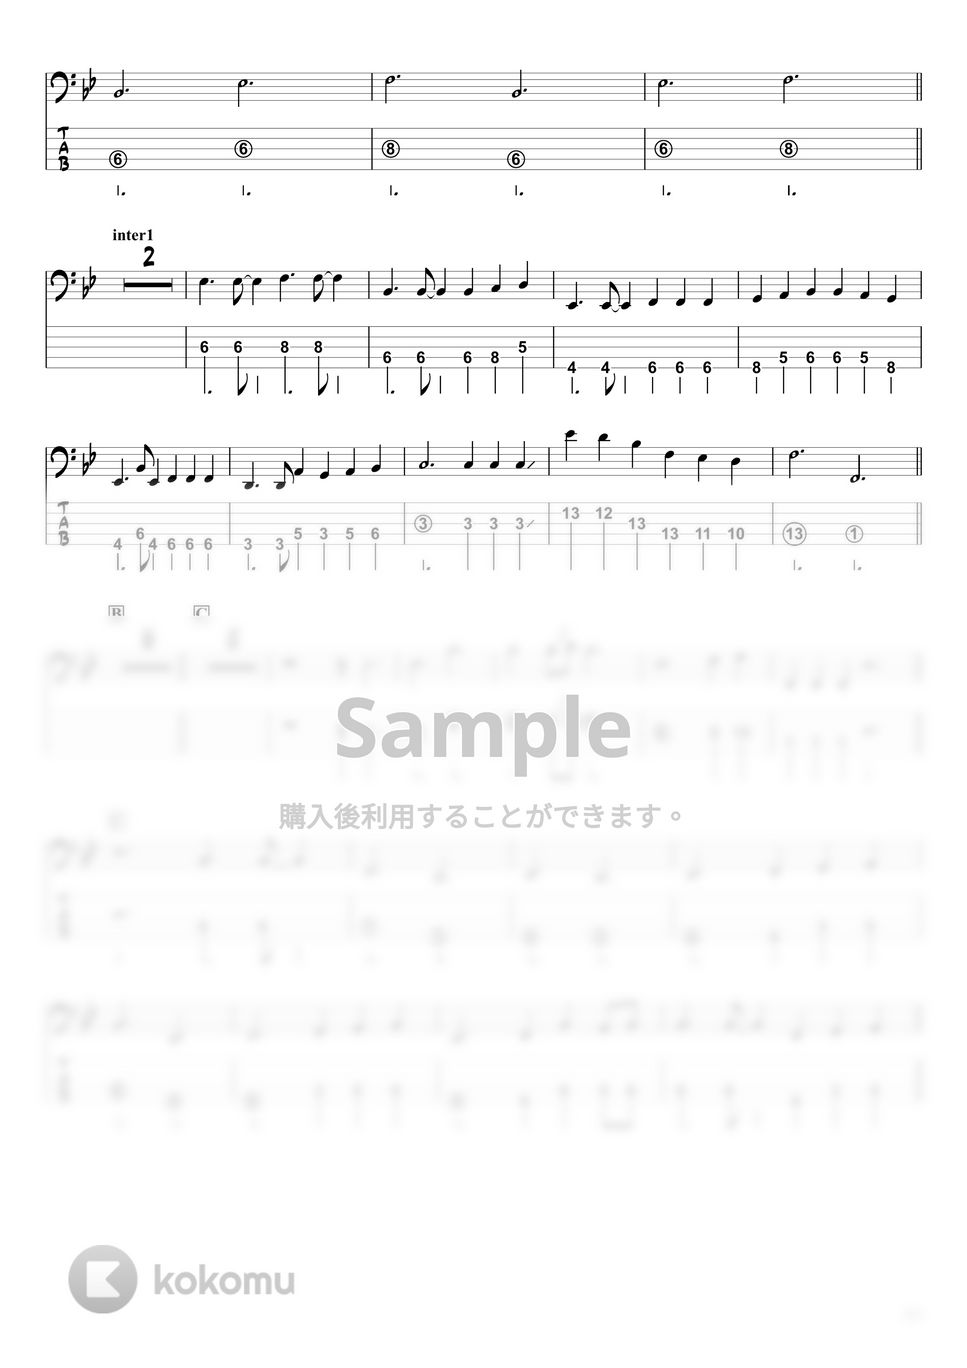 あいみょん - 愛の花 (ベースTAB譜☆5弦ベース対応) by swbass